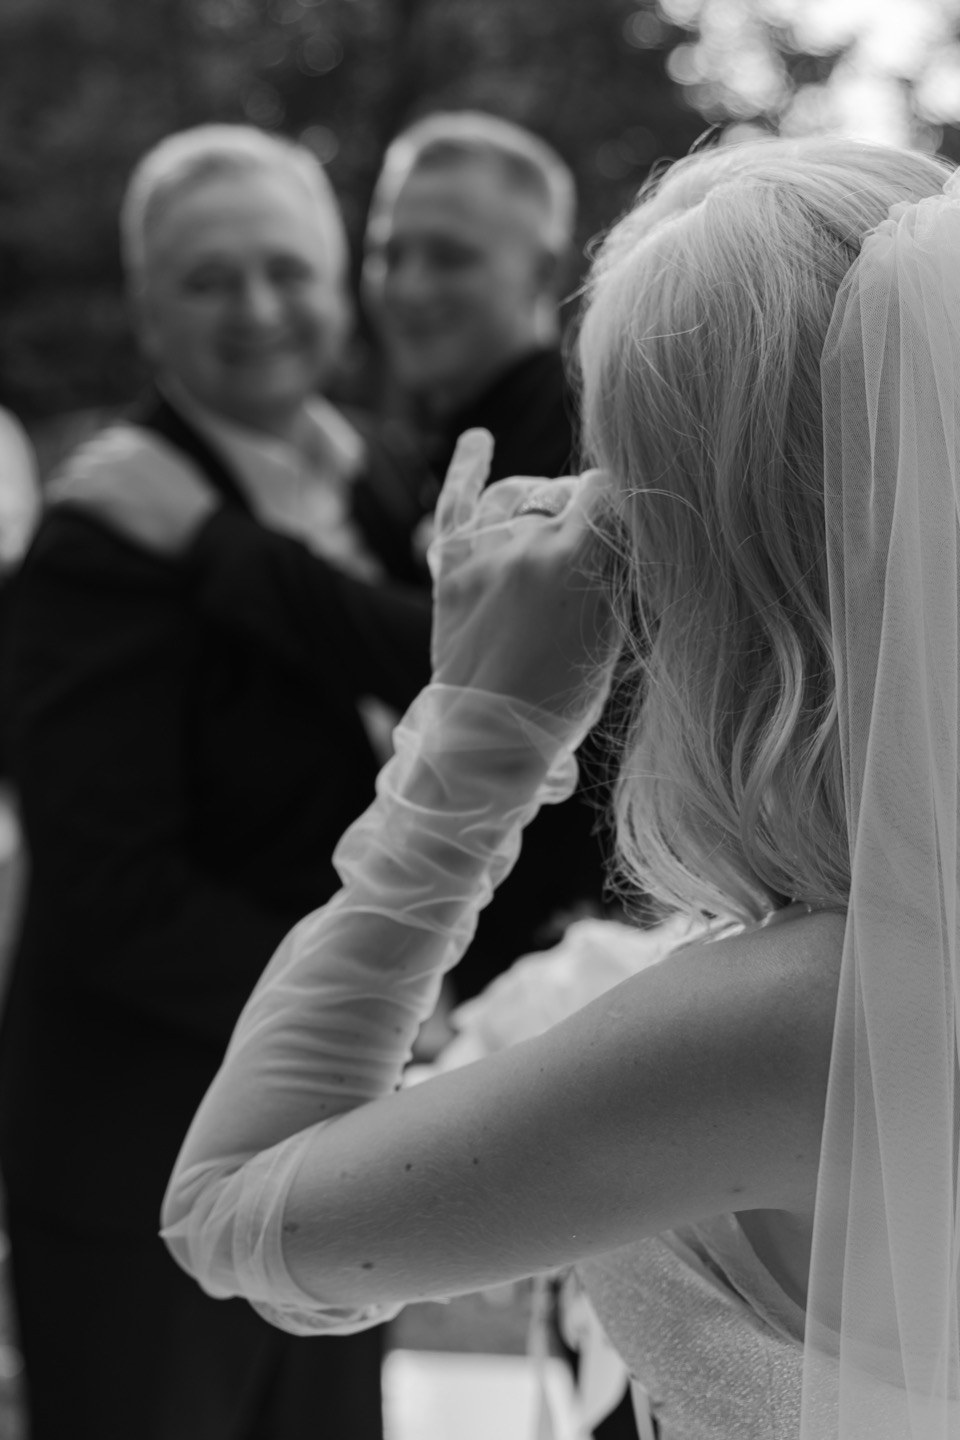 Монохром любви: свадьба в черно-белой гамме